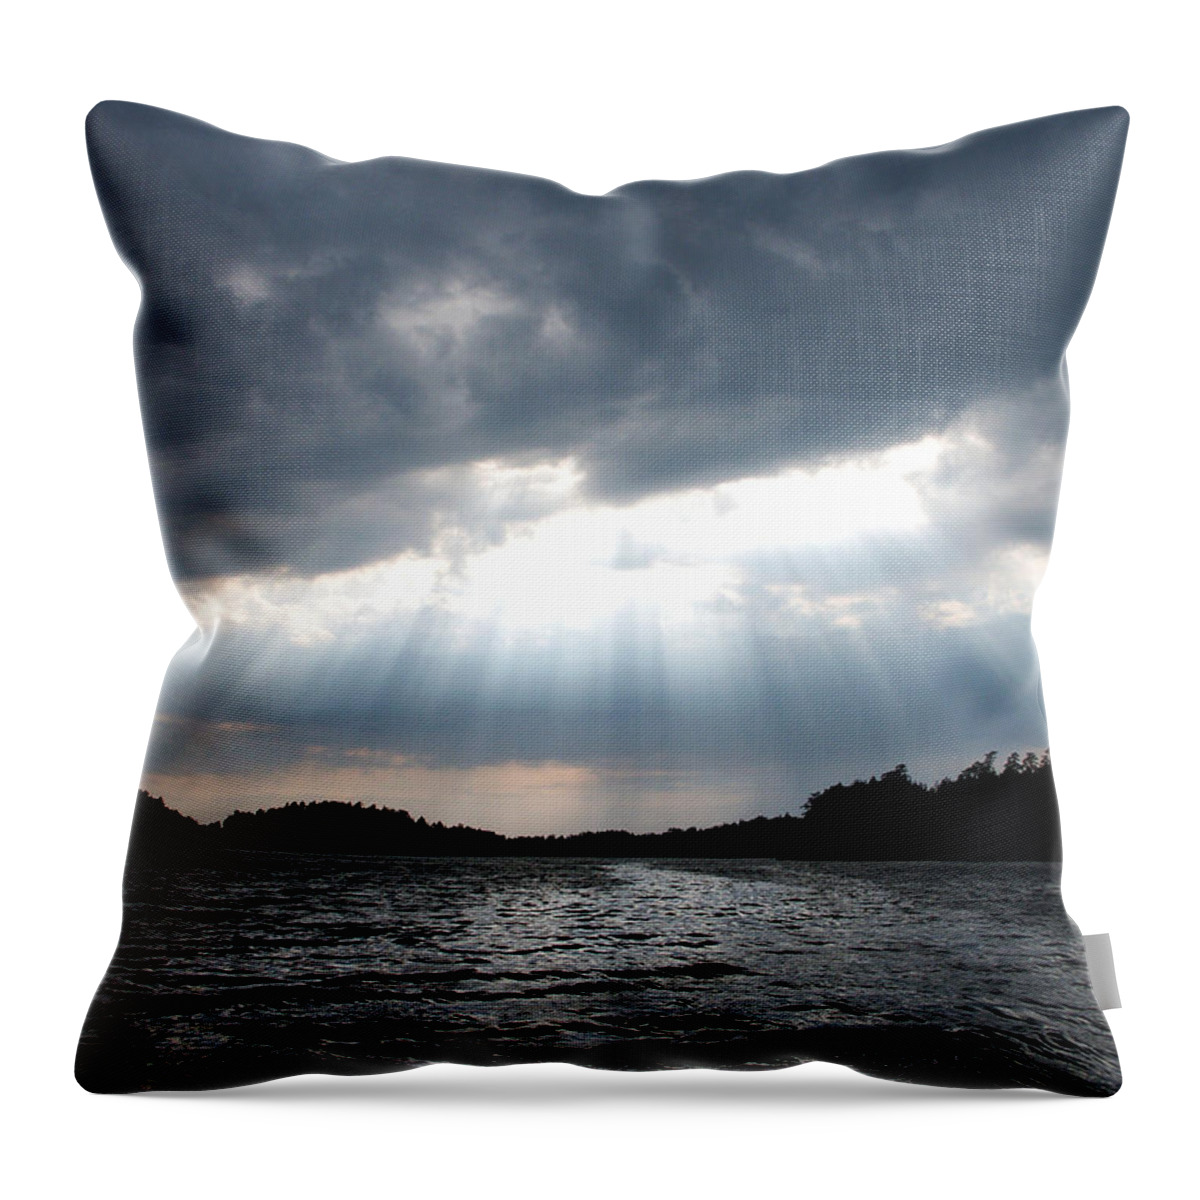 Lehtokukka Throw Pillow featuring the photograph The Light by Jouko Lehto